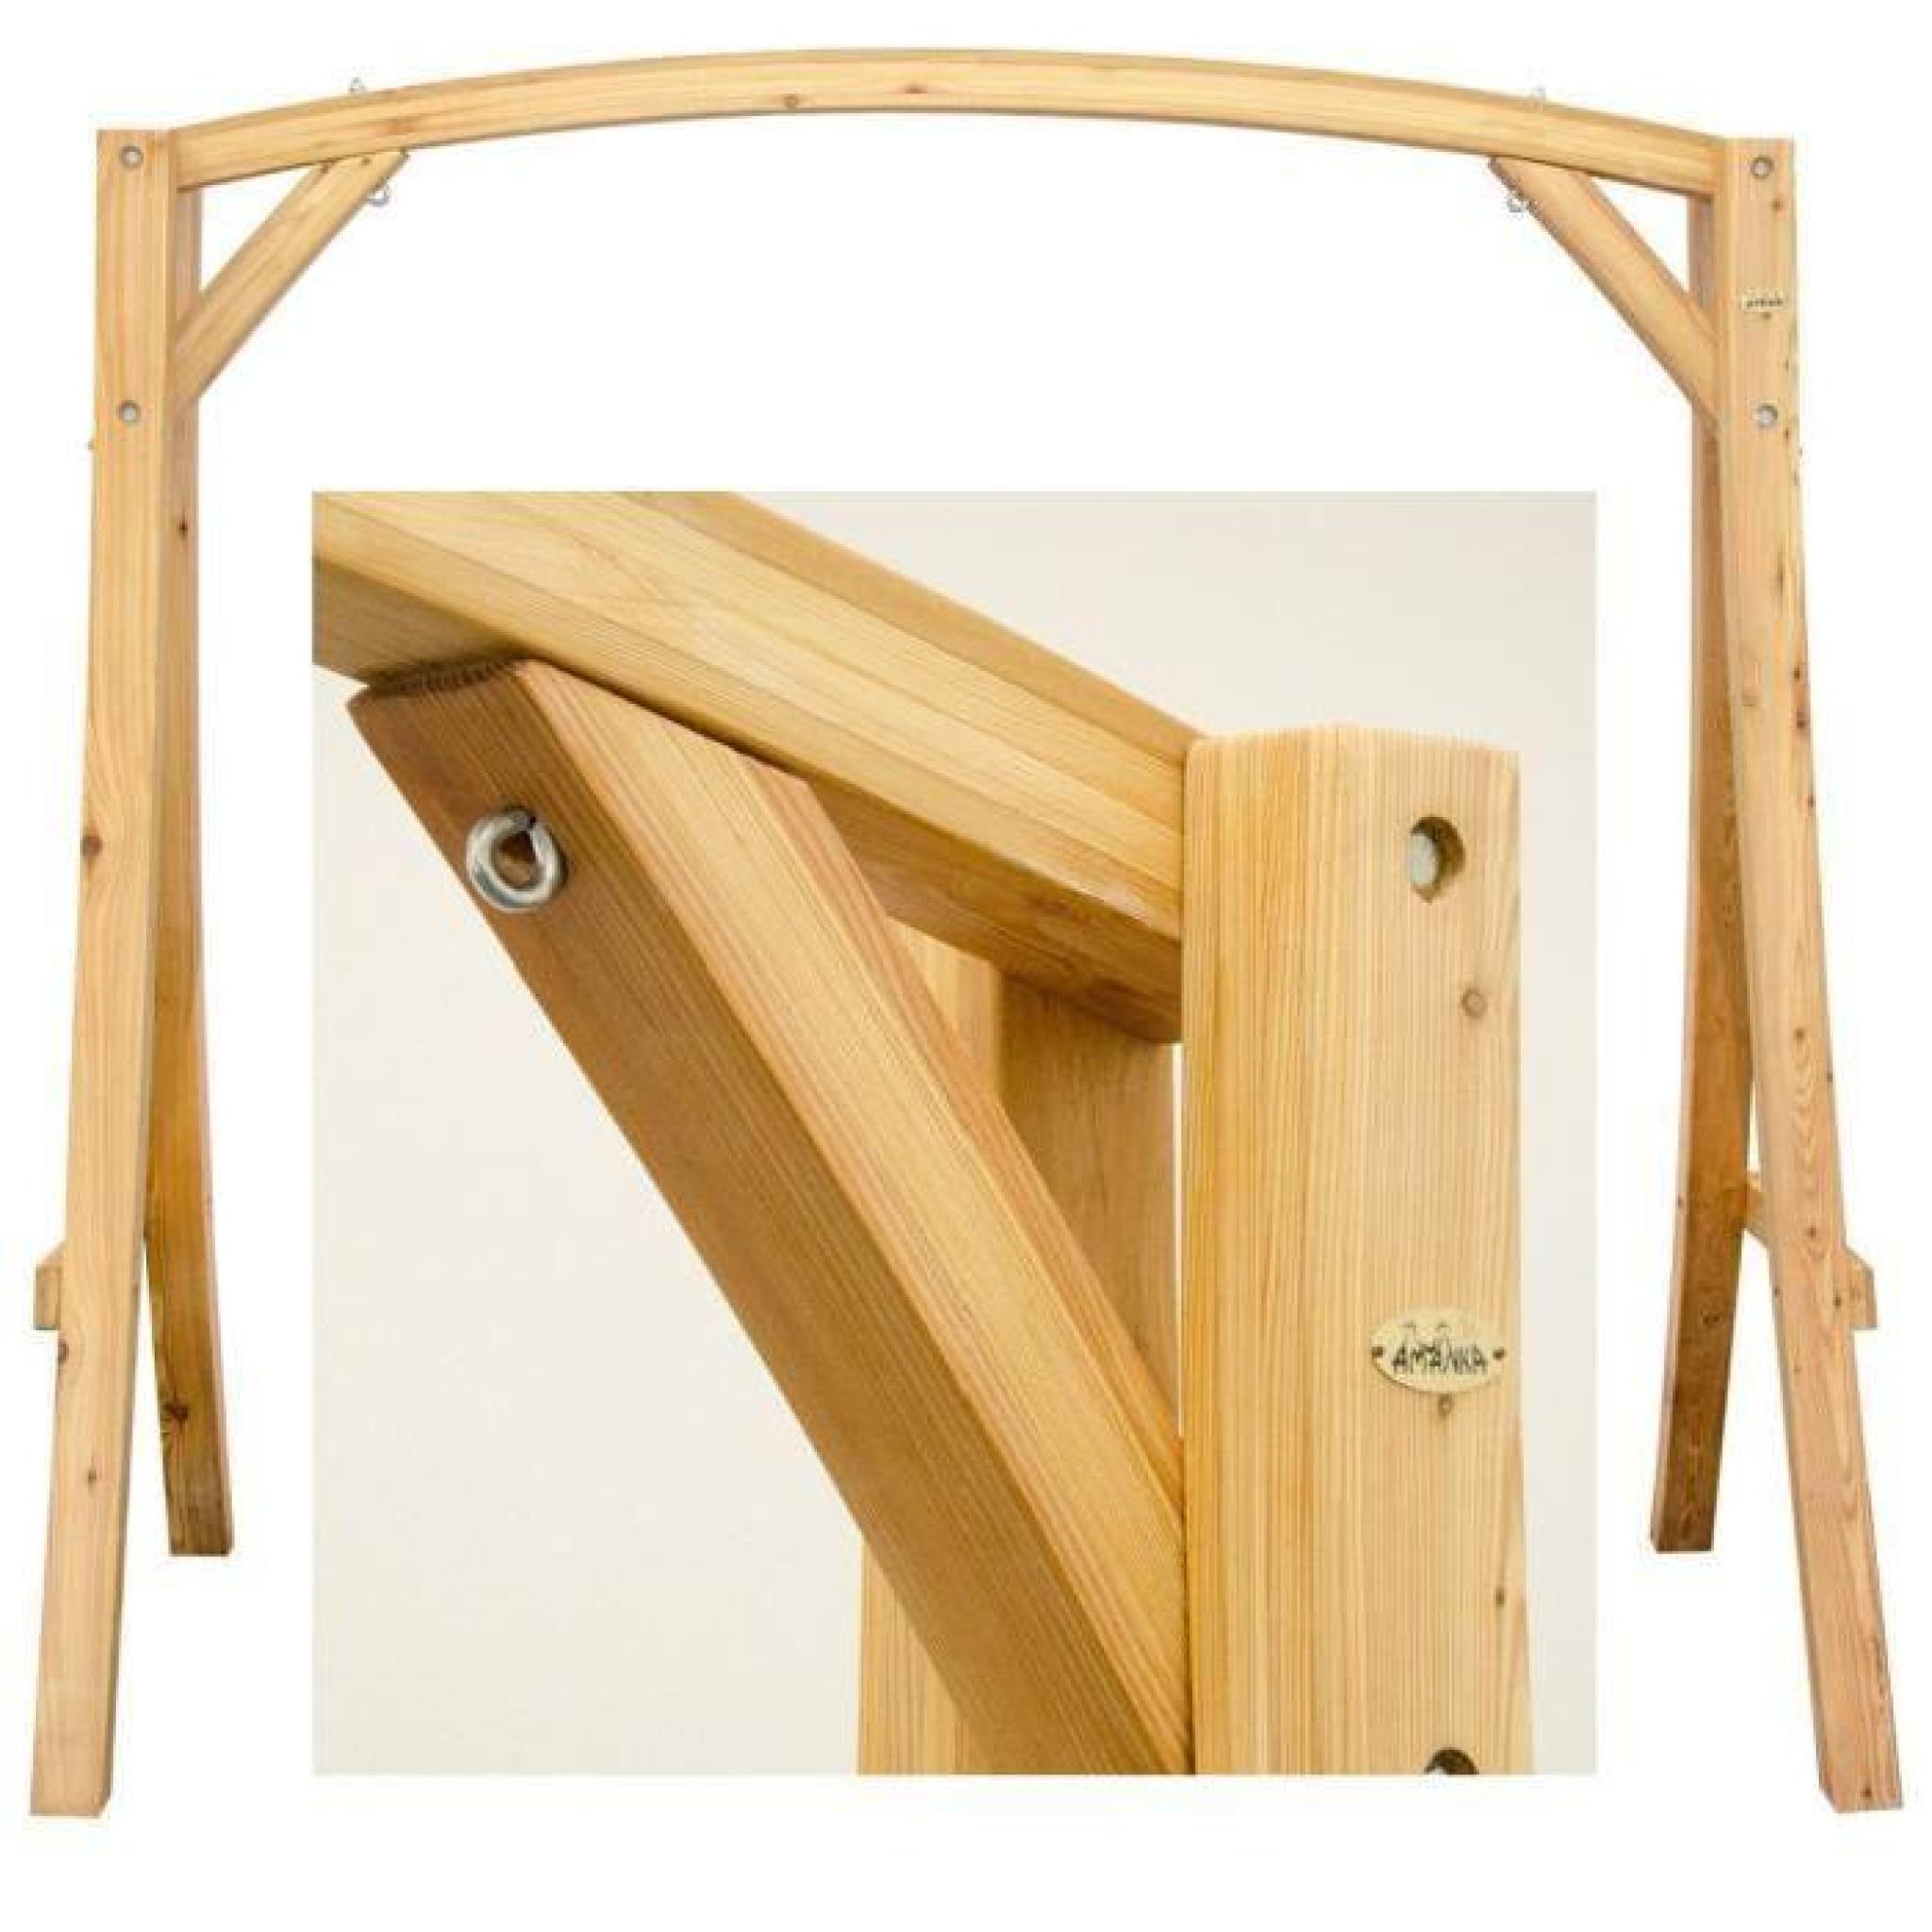 SUPPORT en bois de mélèze pour balancelles env 205x105x198cm | pour l'intérieur et l'extérieur de la maison | SIÈGE NON INCLUS pas cher